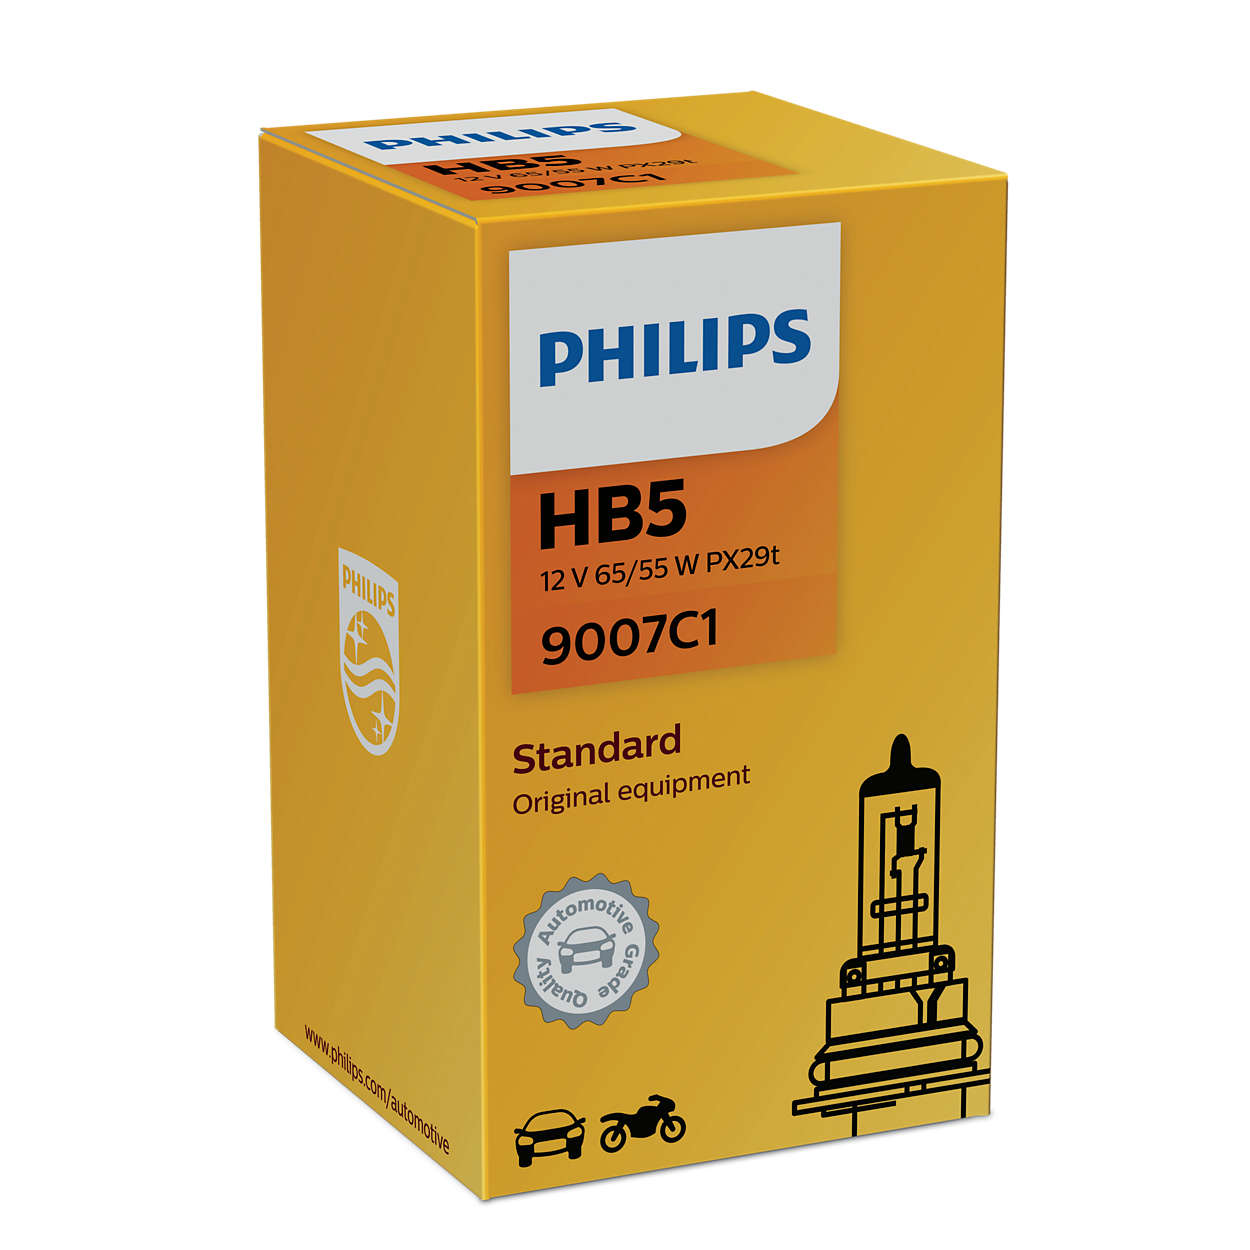 Philips HB5 12V